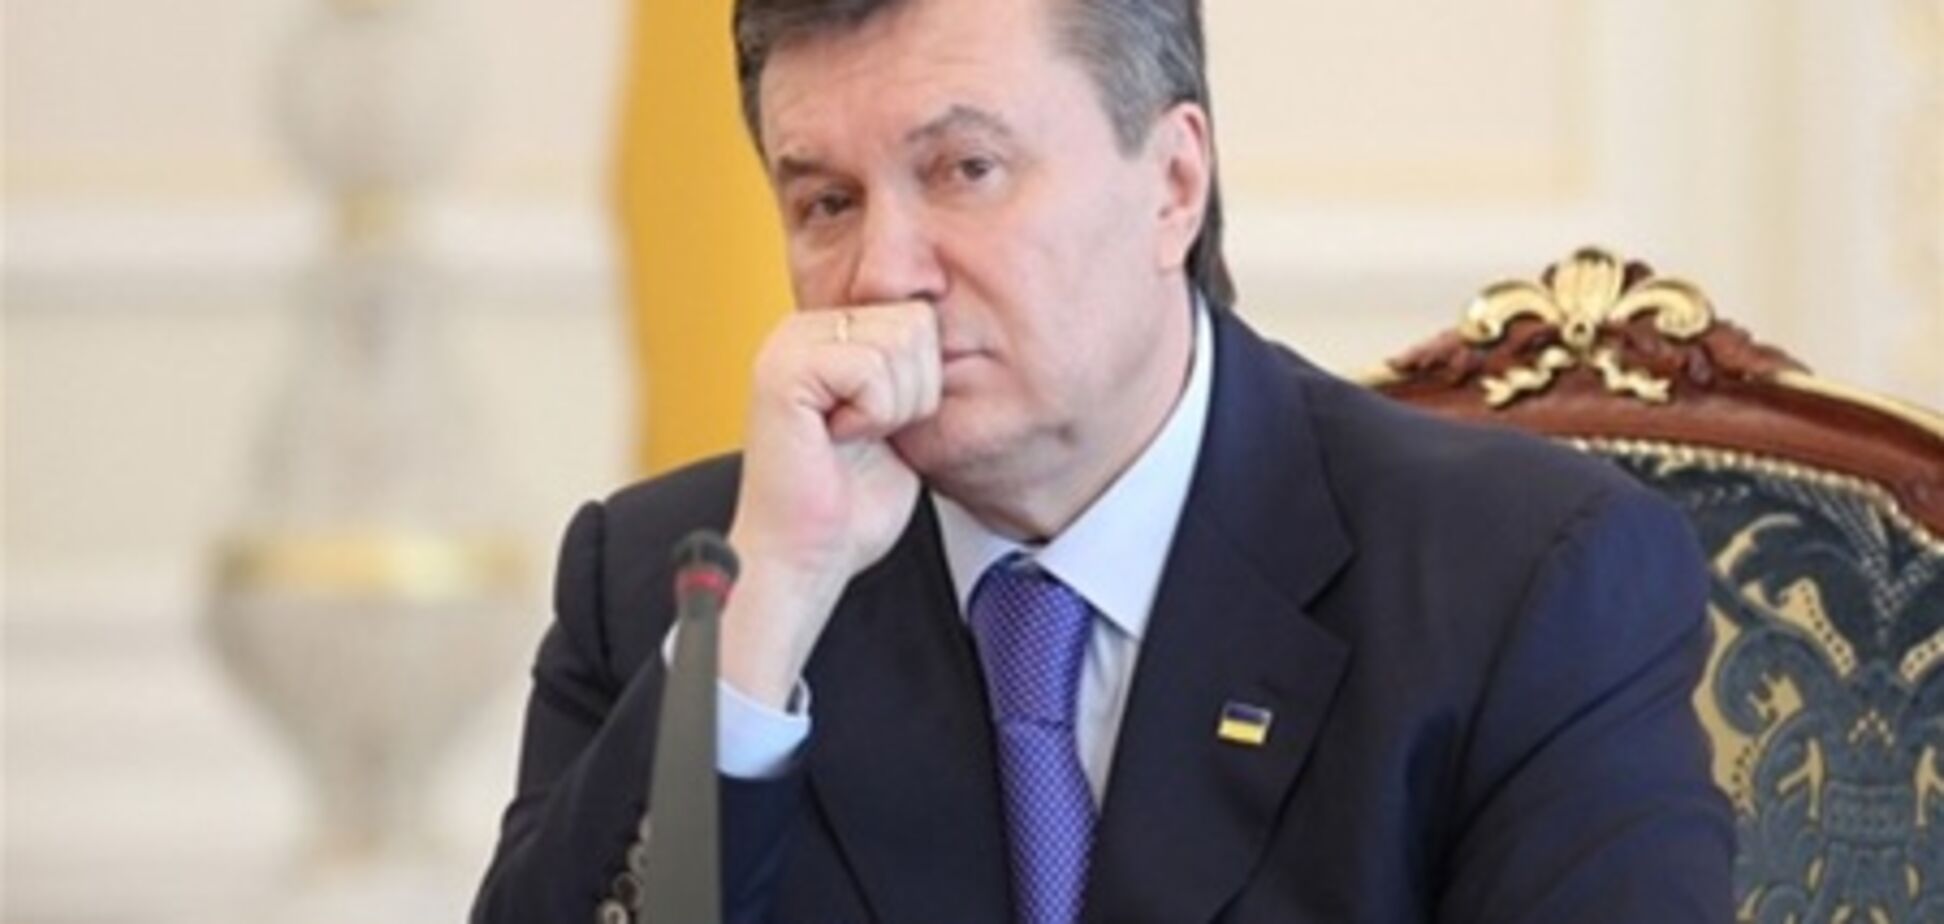 ПР: рейтинг Януковича вырастет